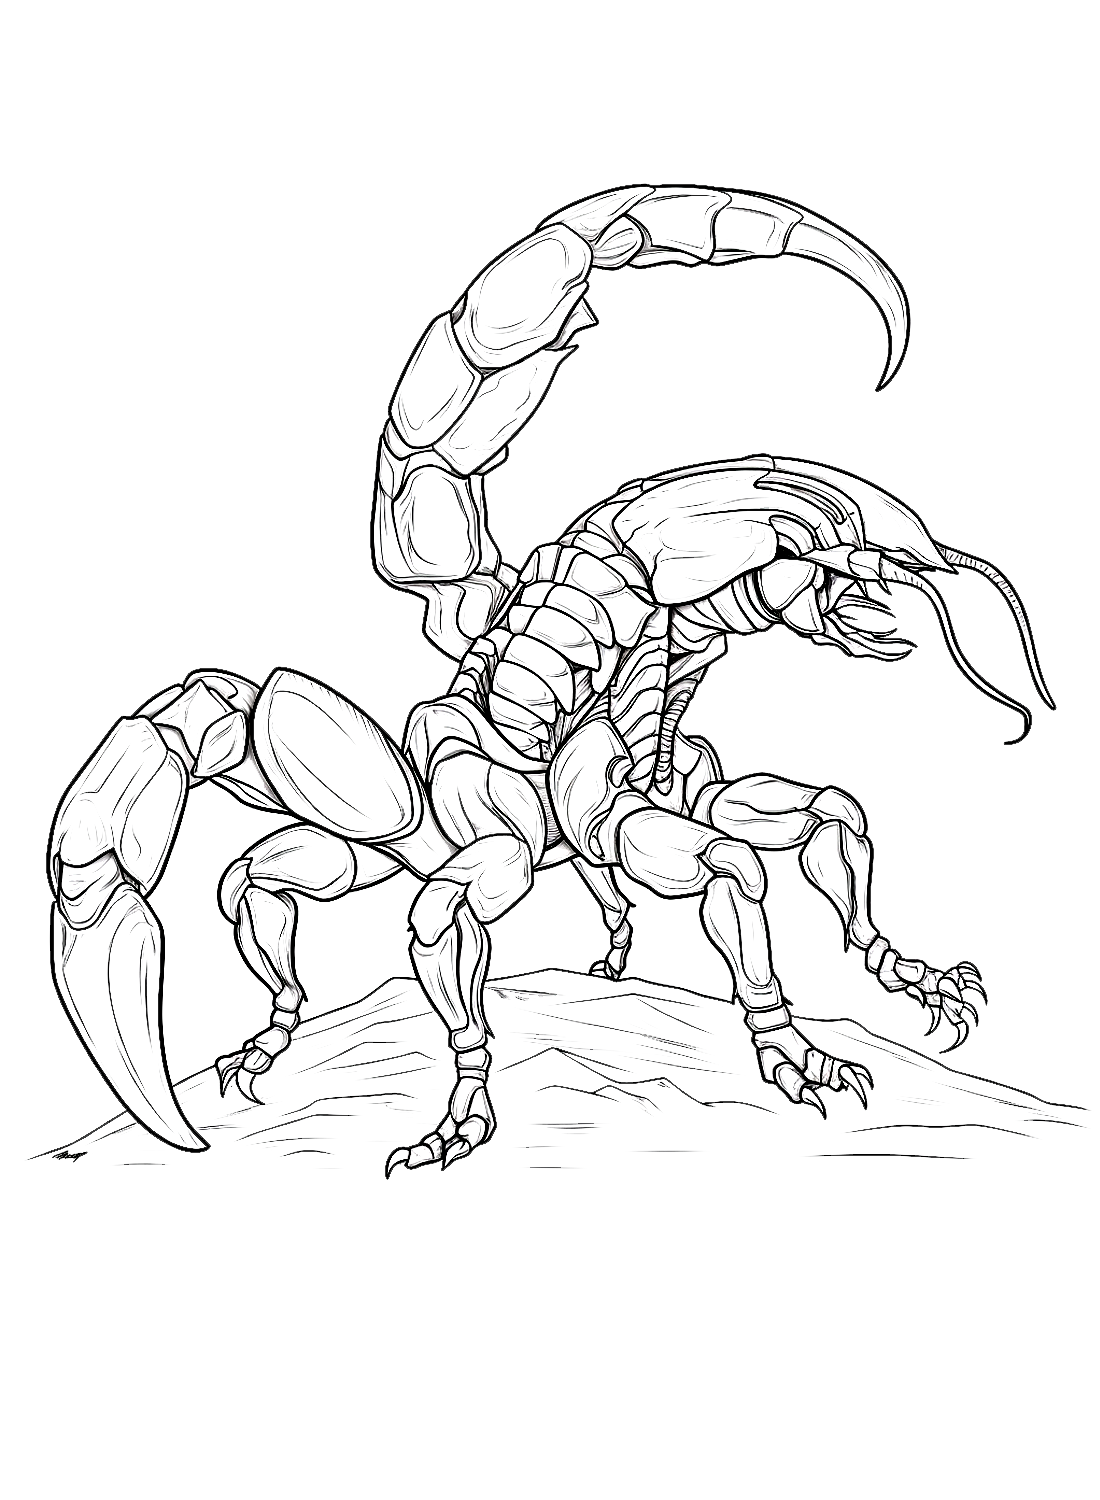 Lo Scorpione degli Scorpioni